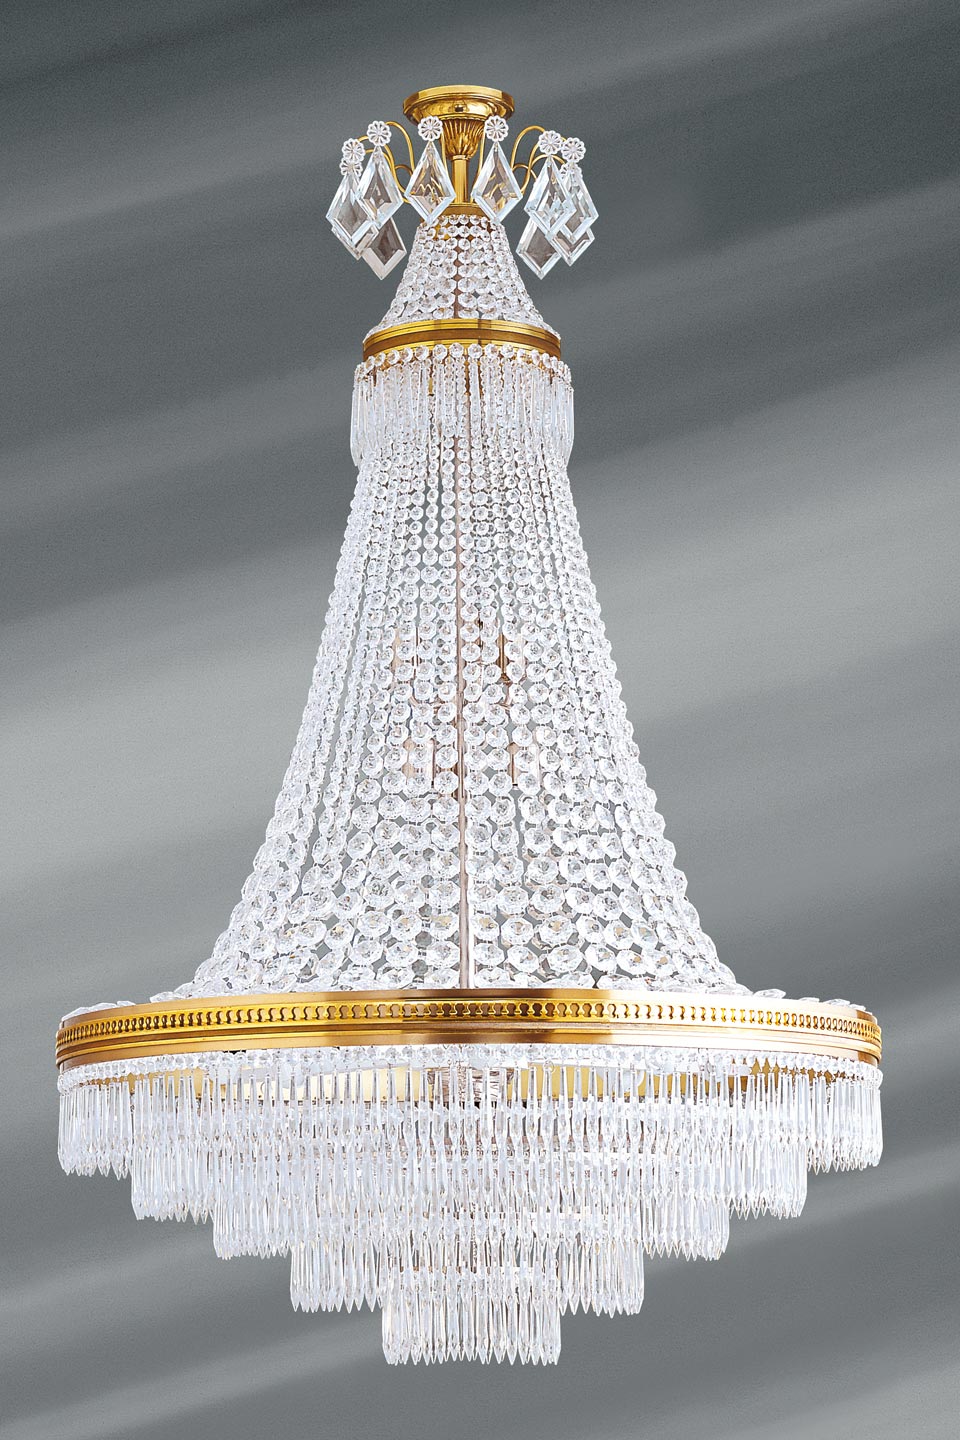 Grand lustre Louis XVI doré cristal de bohème 14 lumières - Lucien Gau,  luminaires classiques de prestige - Réf. 12020172 - mobile